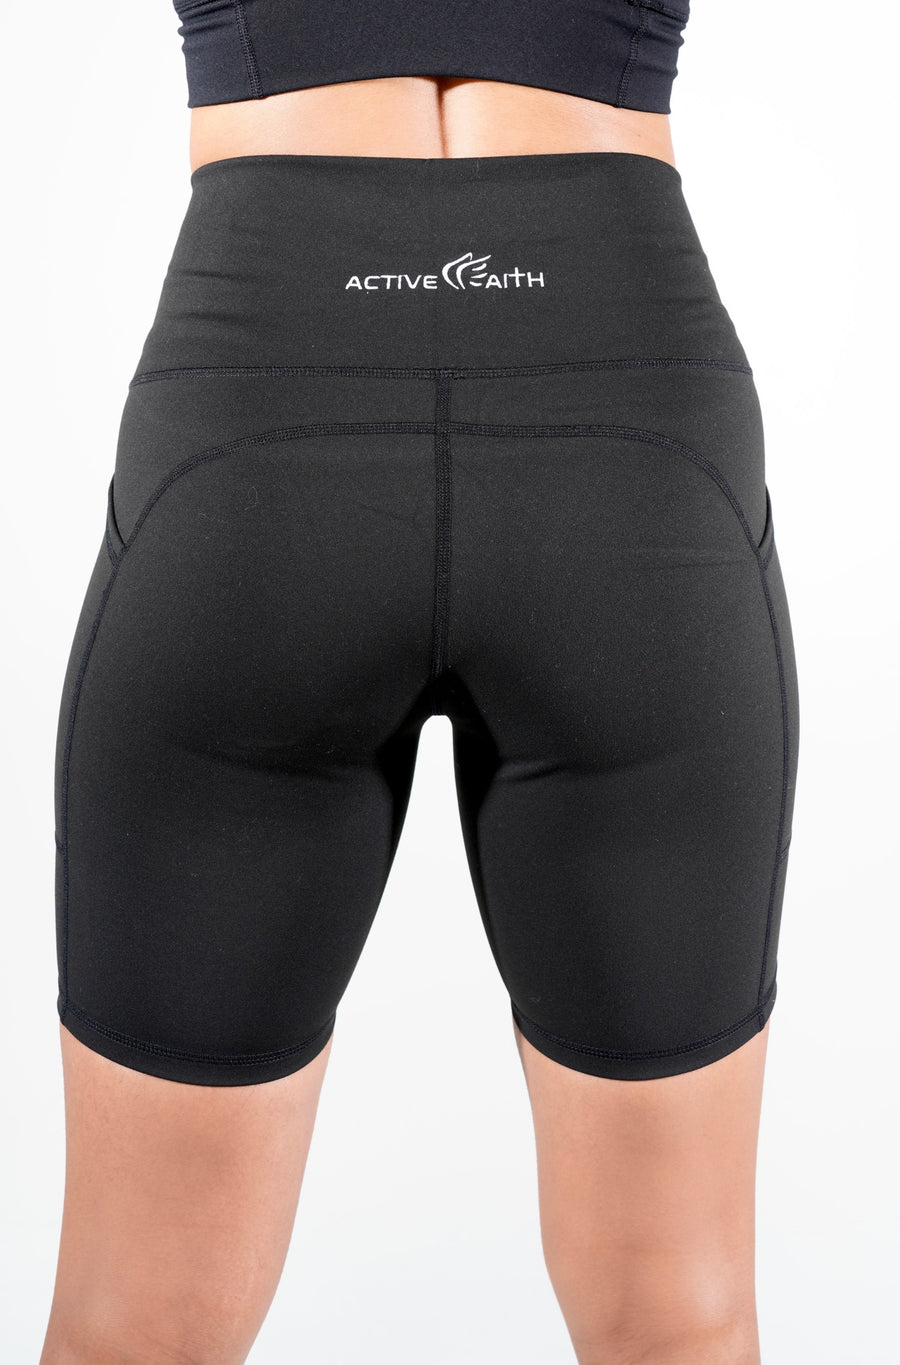 Women's Classic Logo Biker Shorts